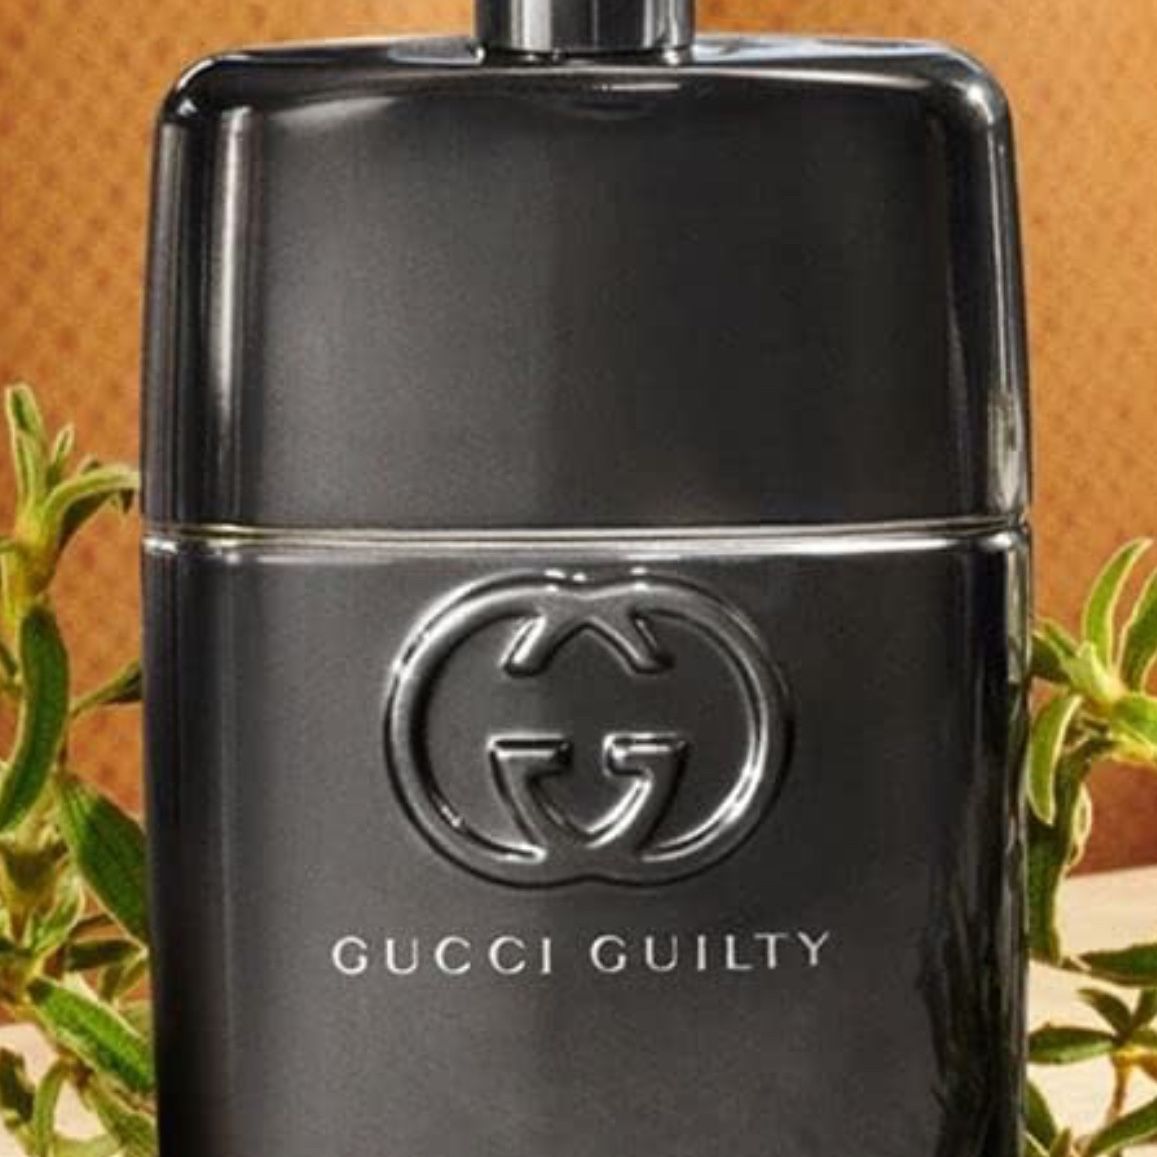 Gucci Guilty Pour Homme 